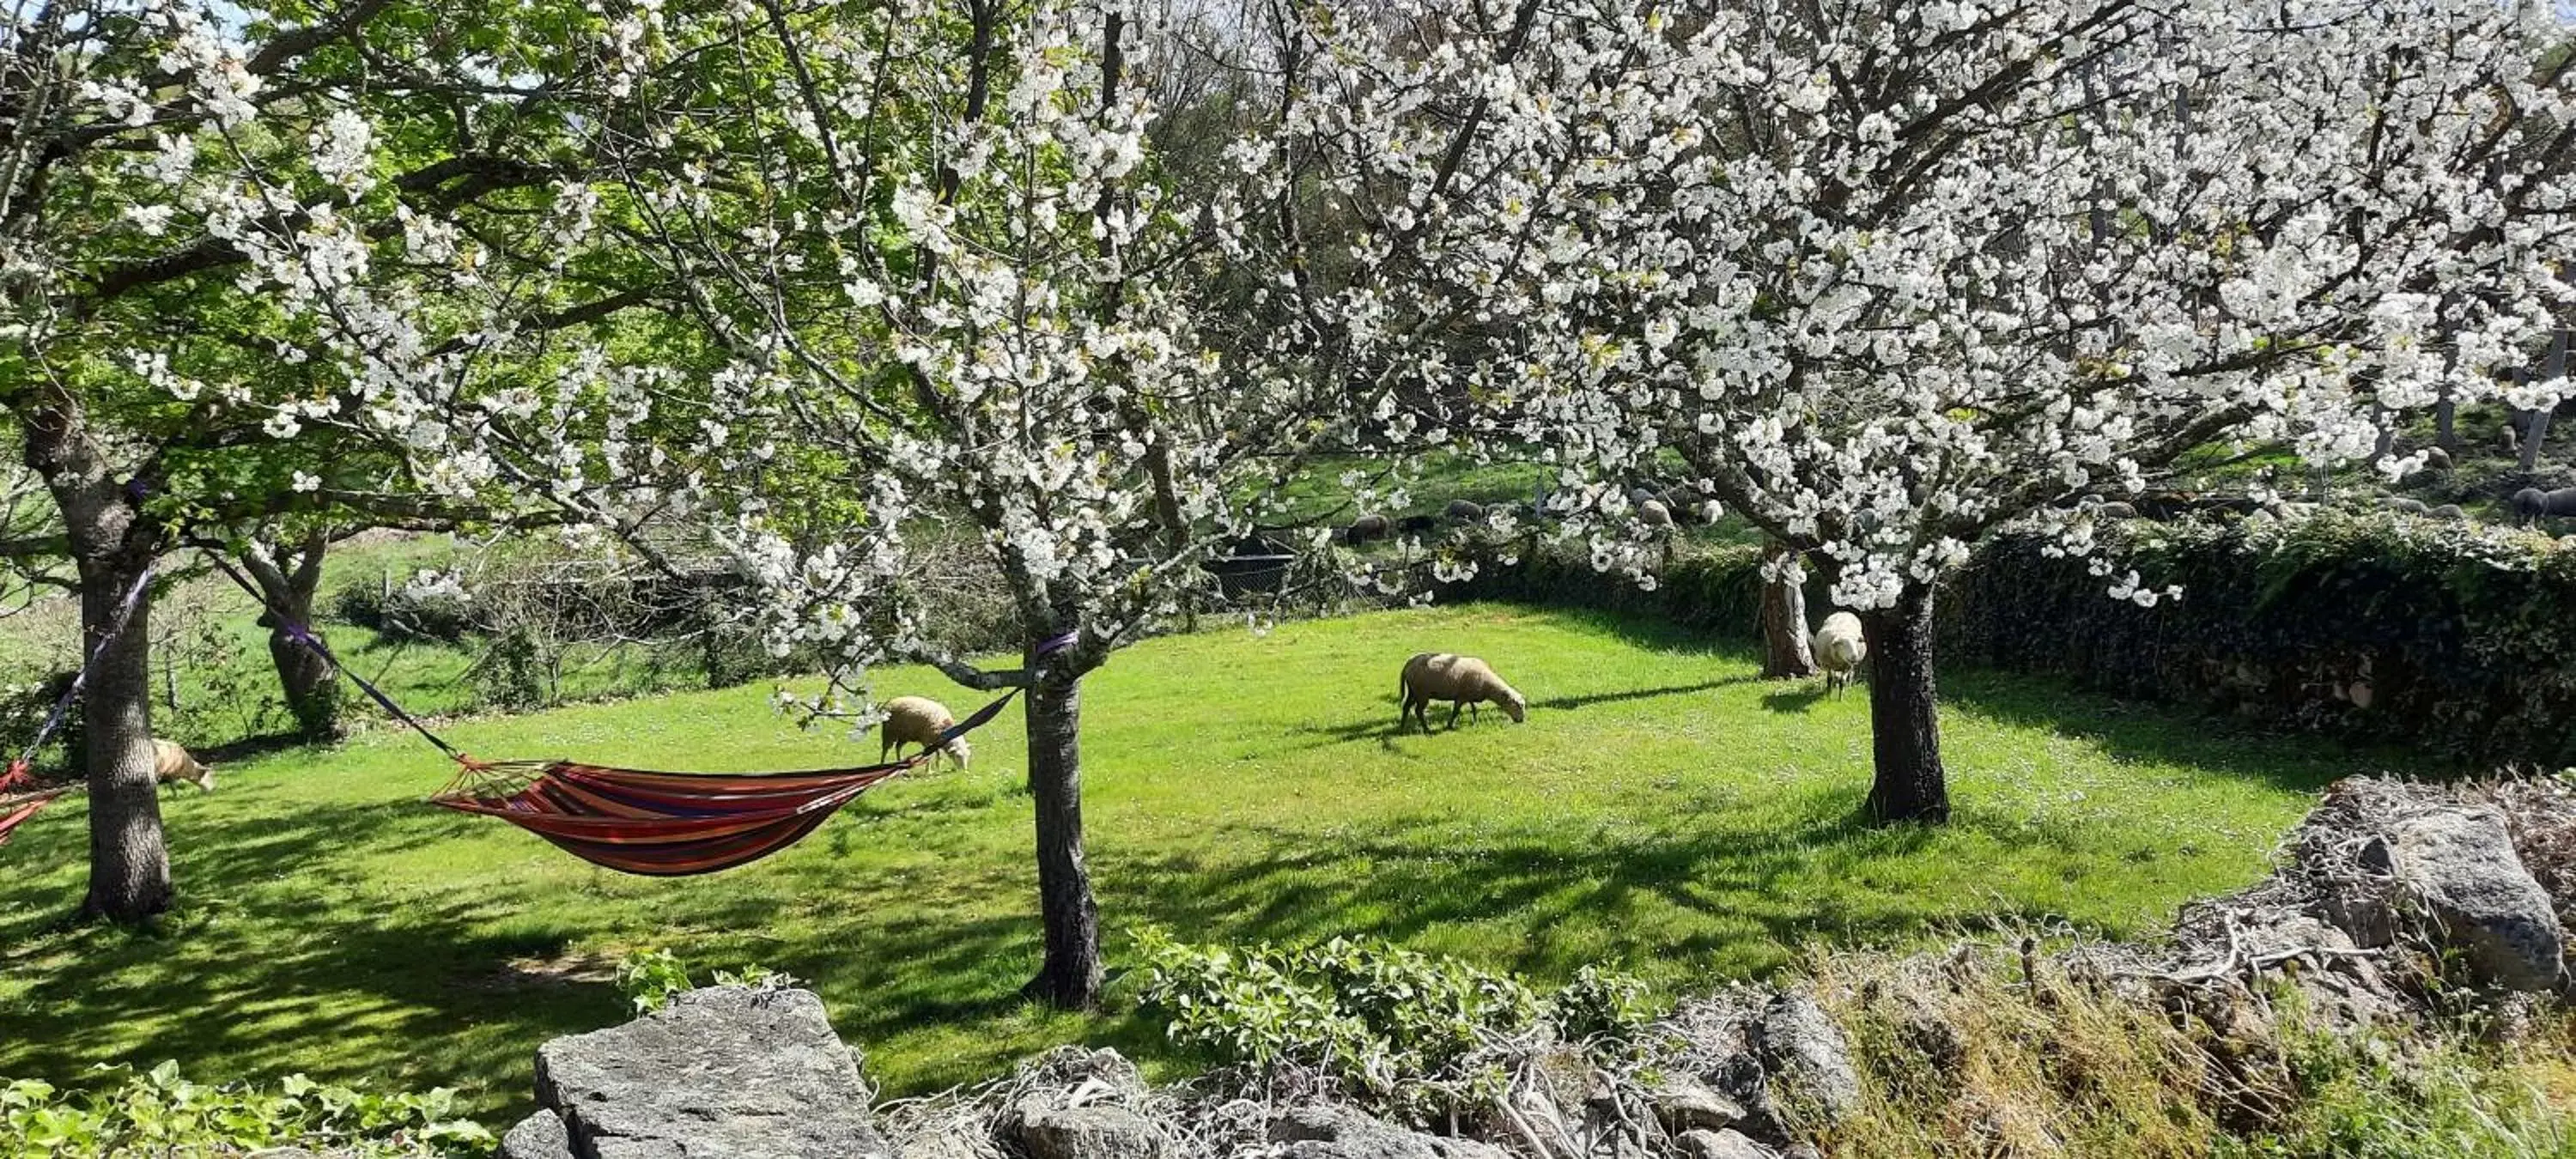 Spring, Garden in Rectoral de Anllo